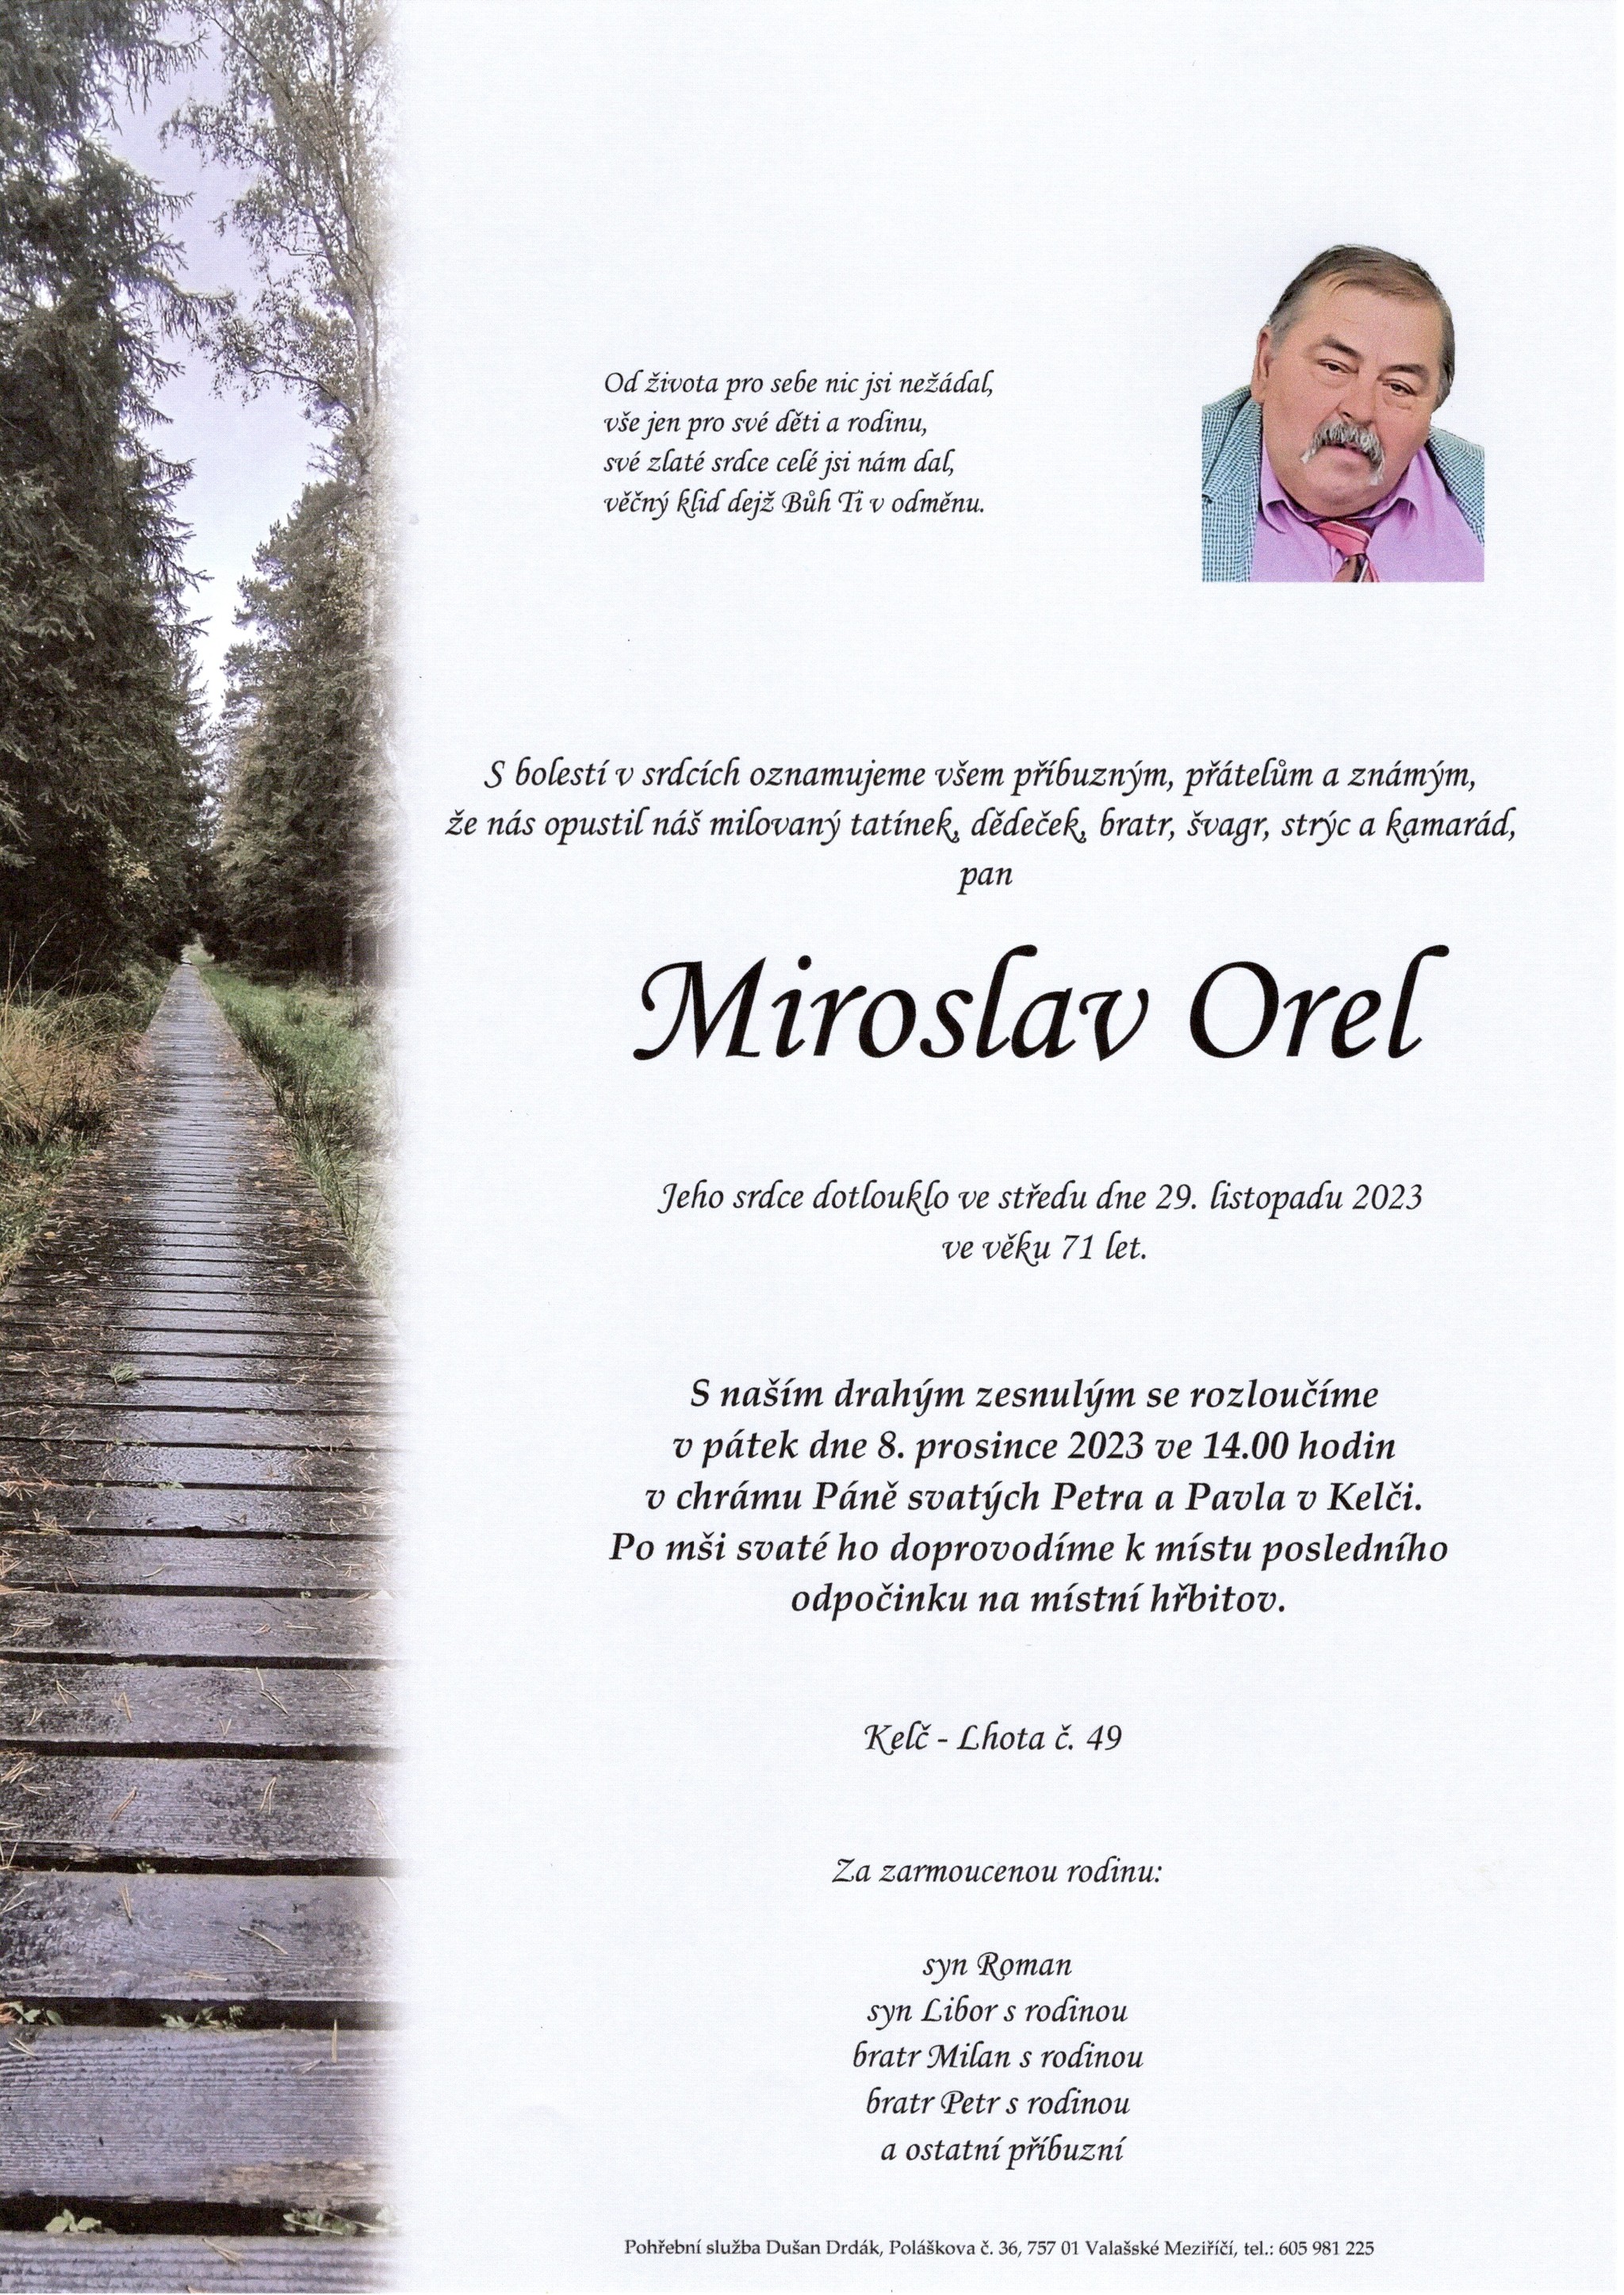 Miroslav Orel